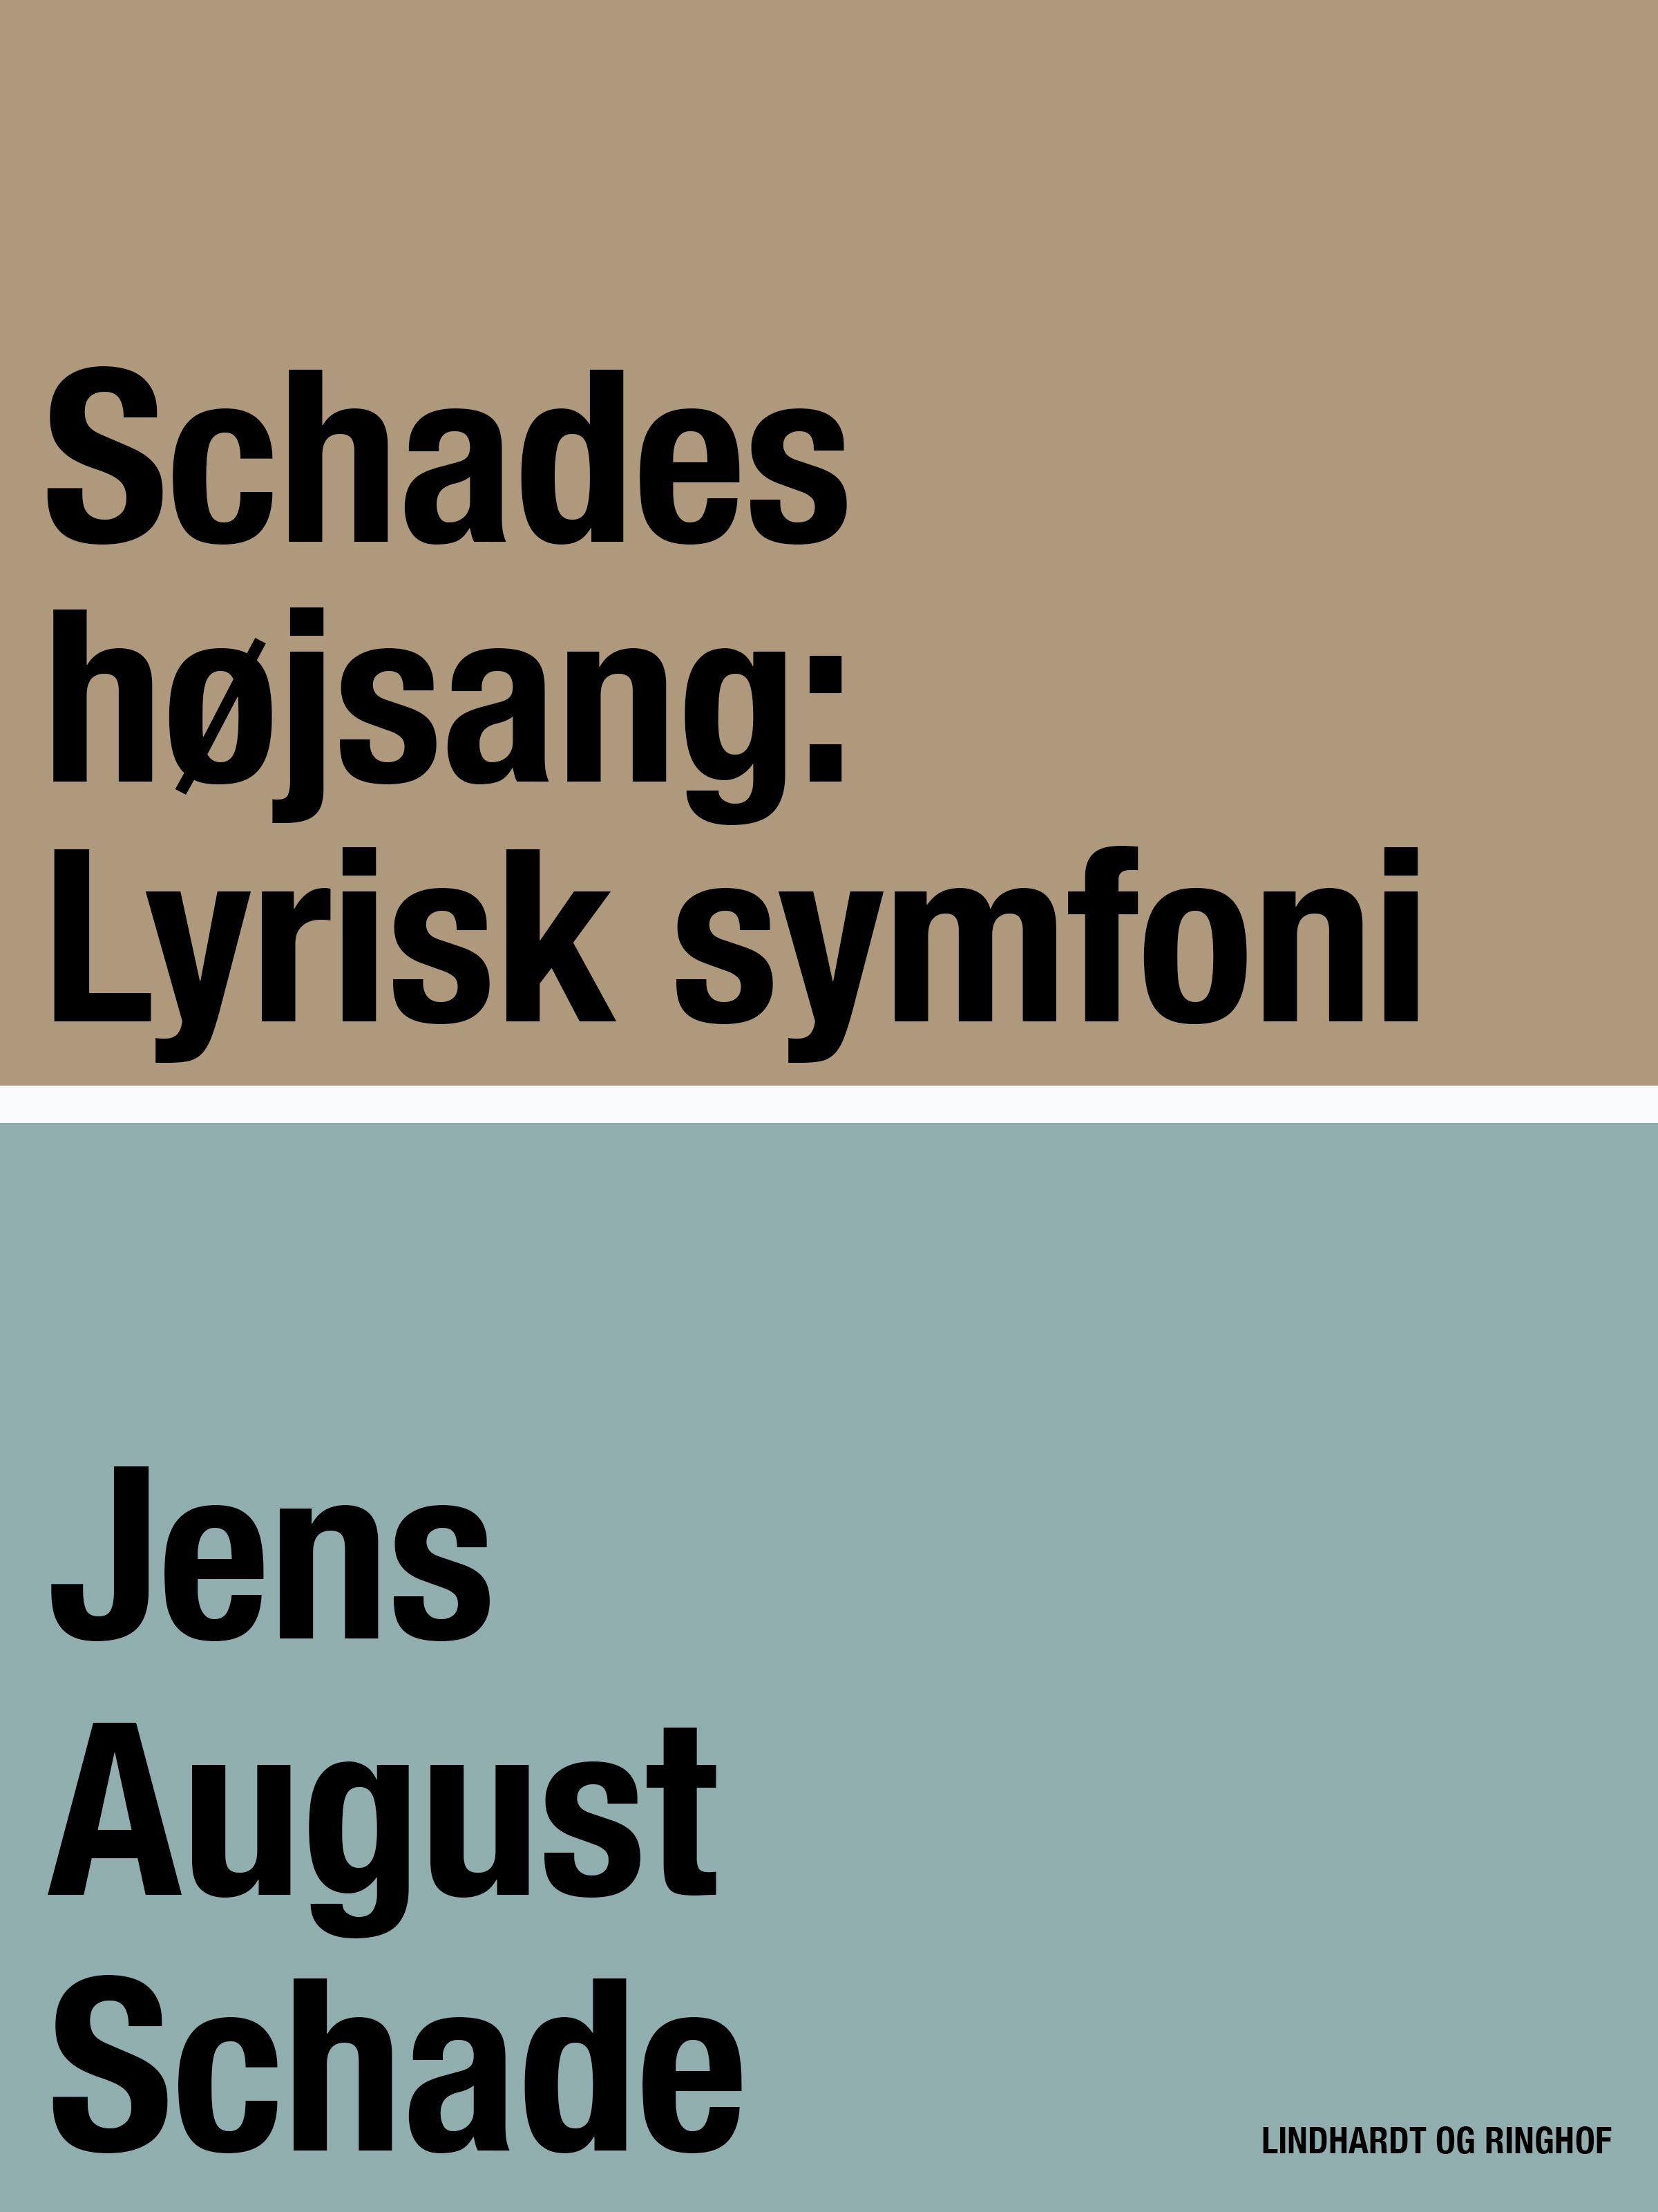 Schades højsang: Lyrisk symfoni, e-bog af Jens August Schade